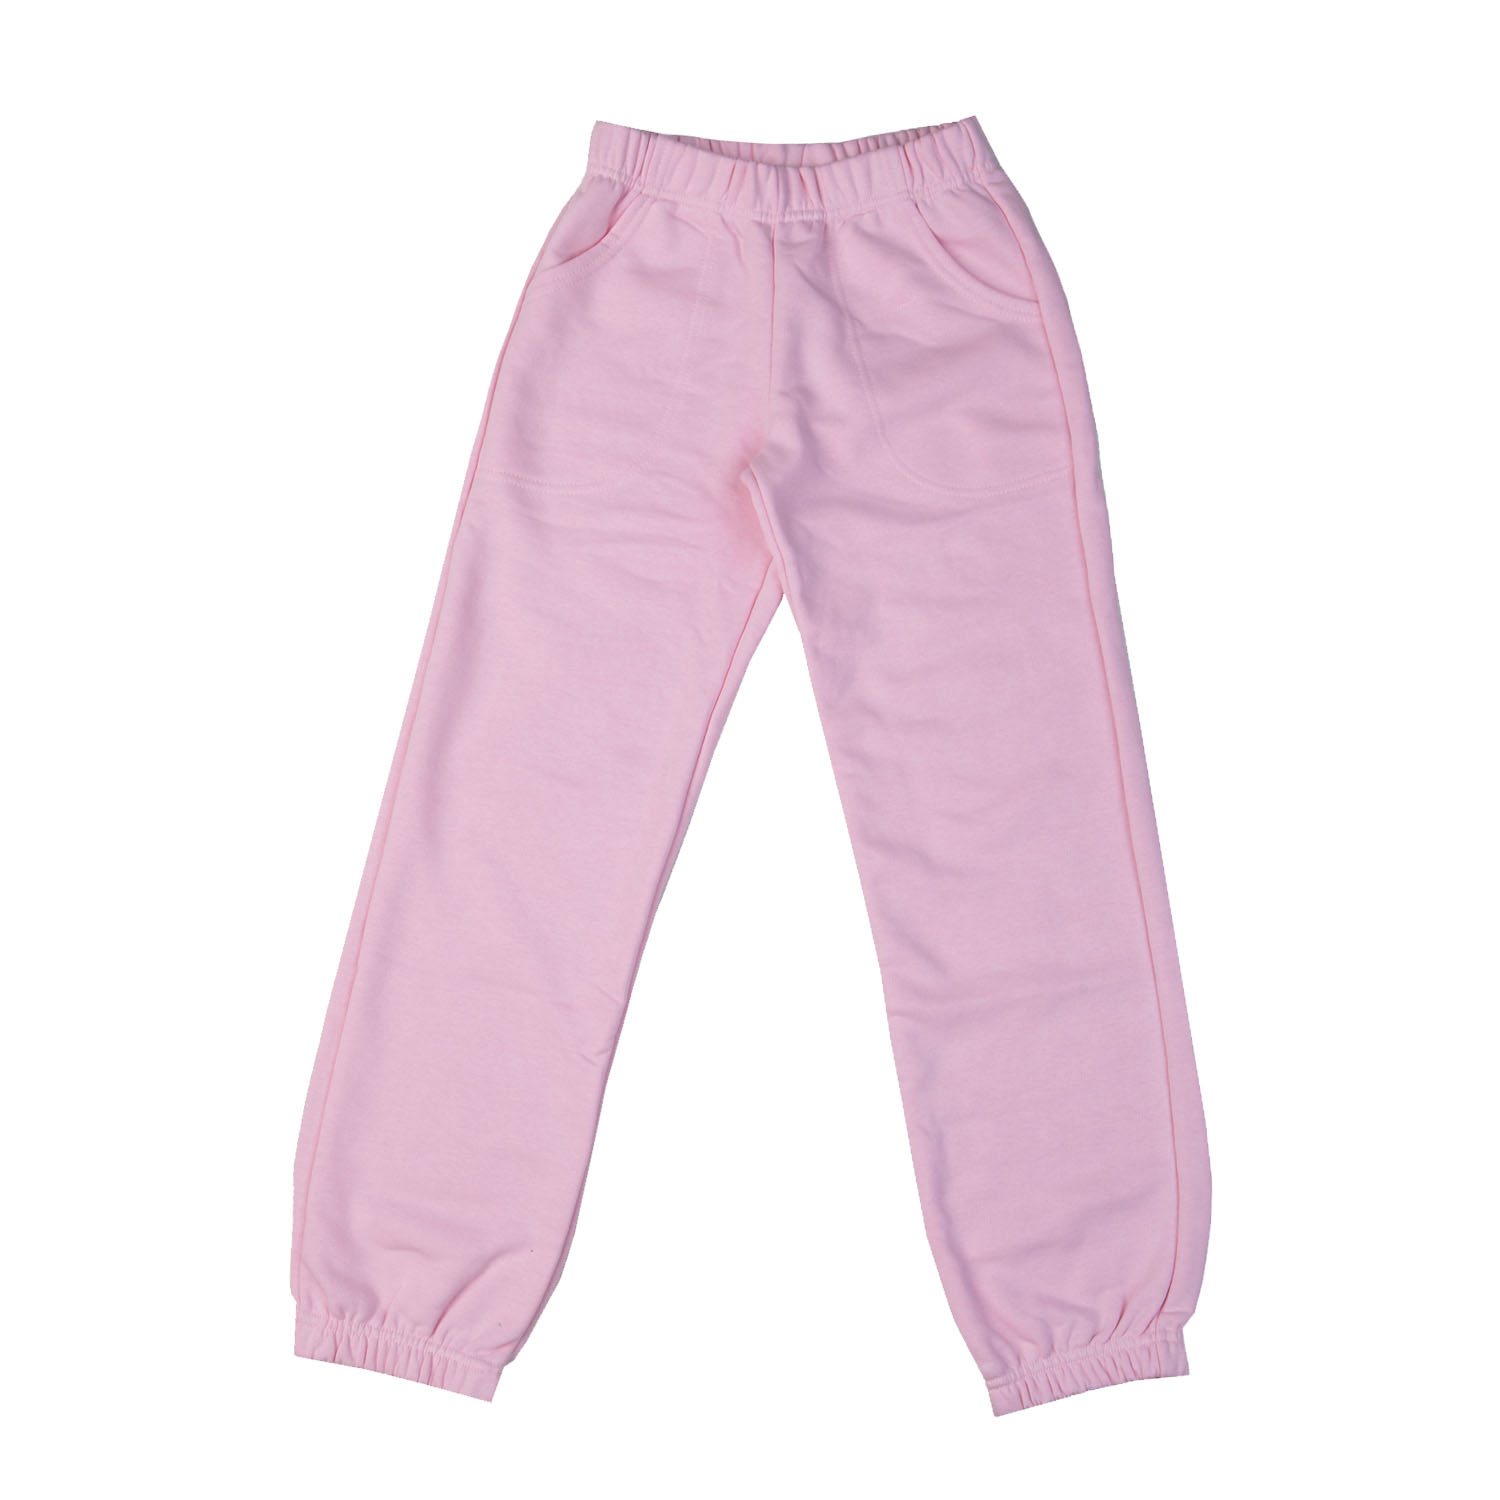 Παντελόνι φόρμας ανοιξιάτικο για κορίτσι σε ροζ χρώμα με λάστιχο -11.4029R 6 60283